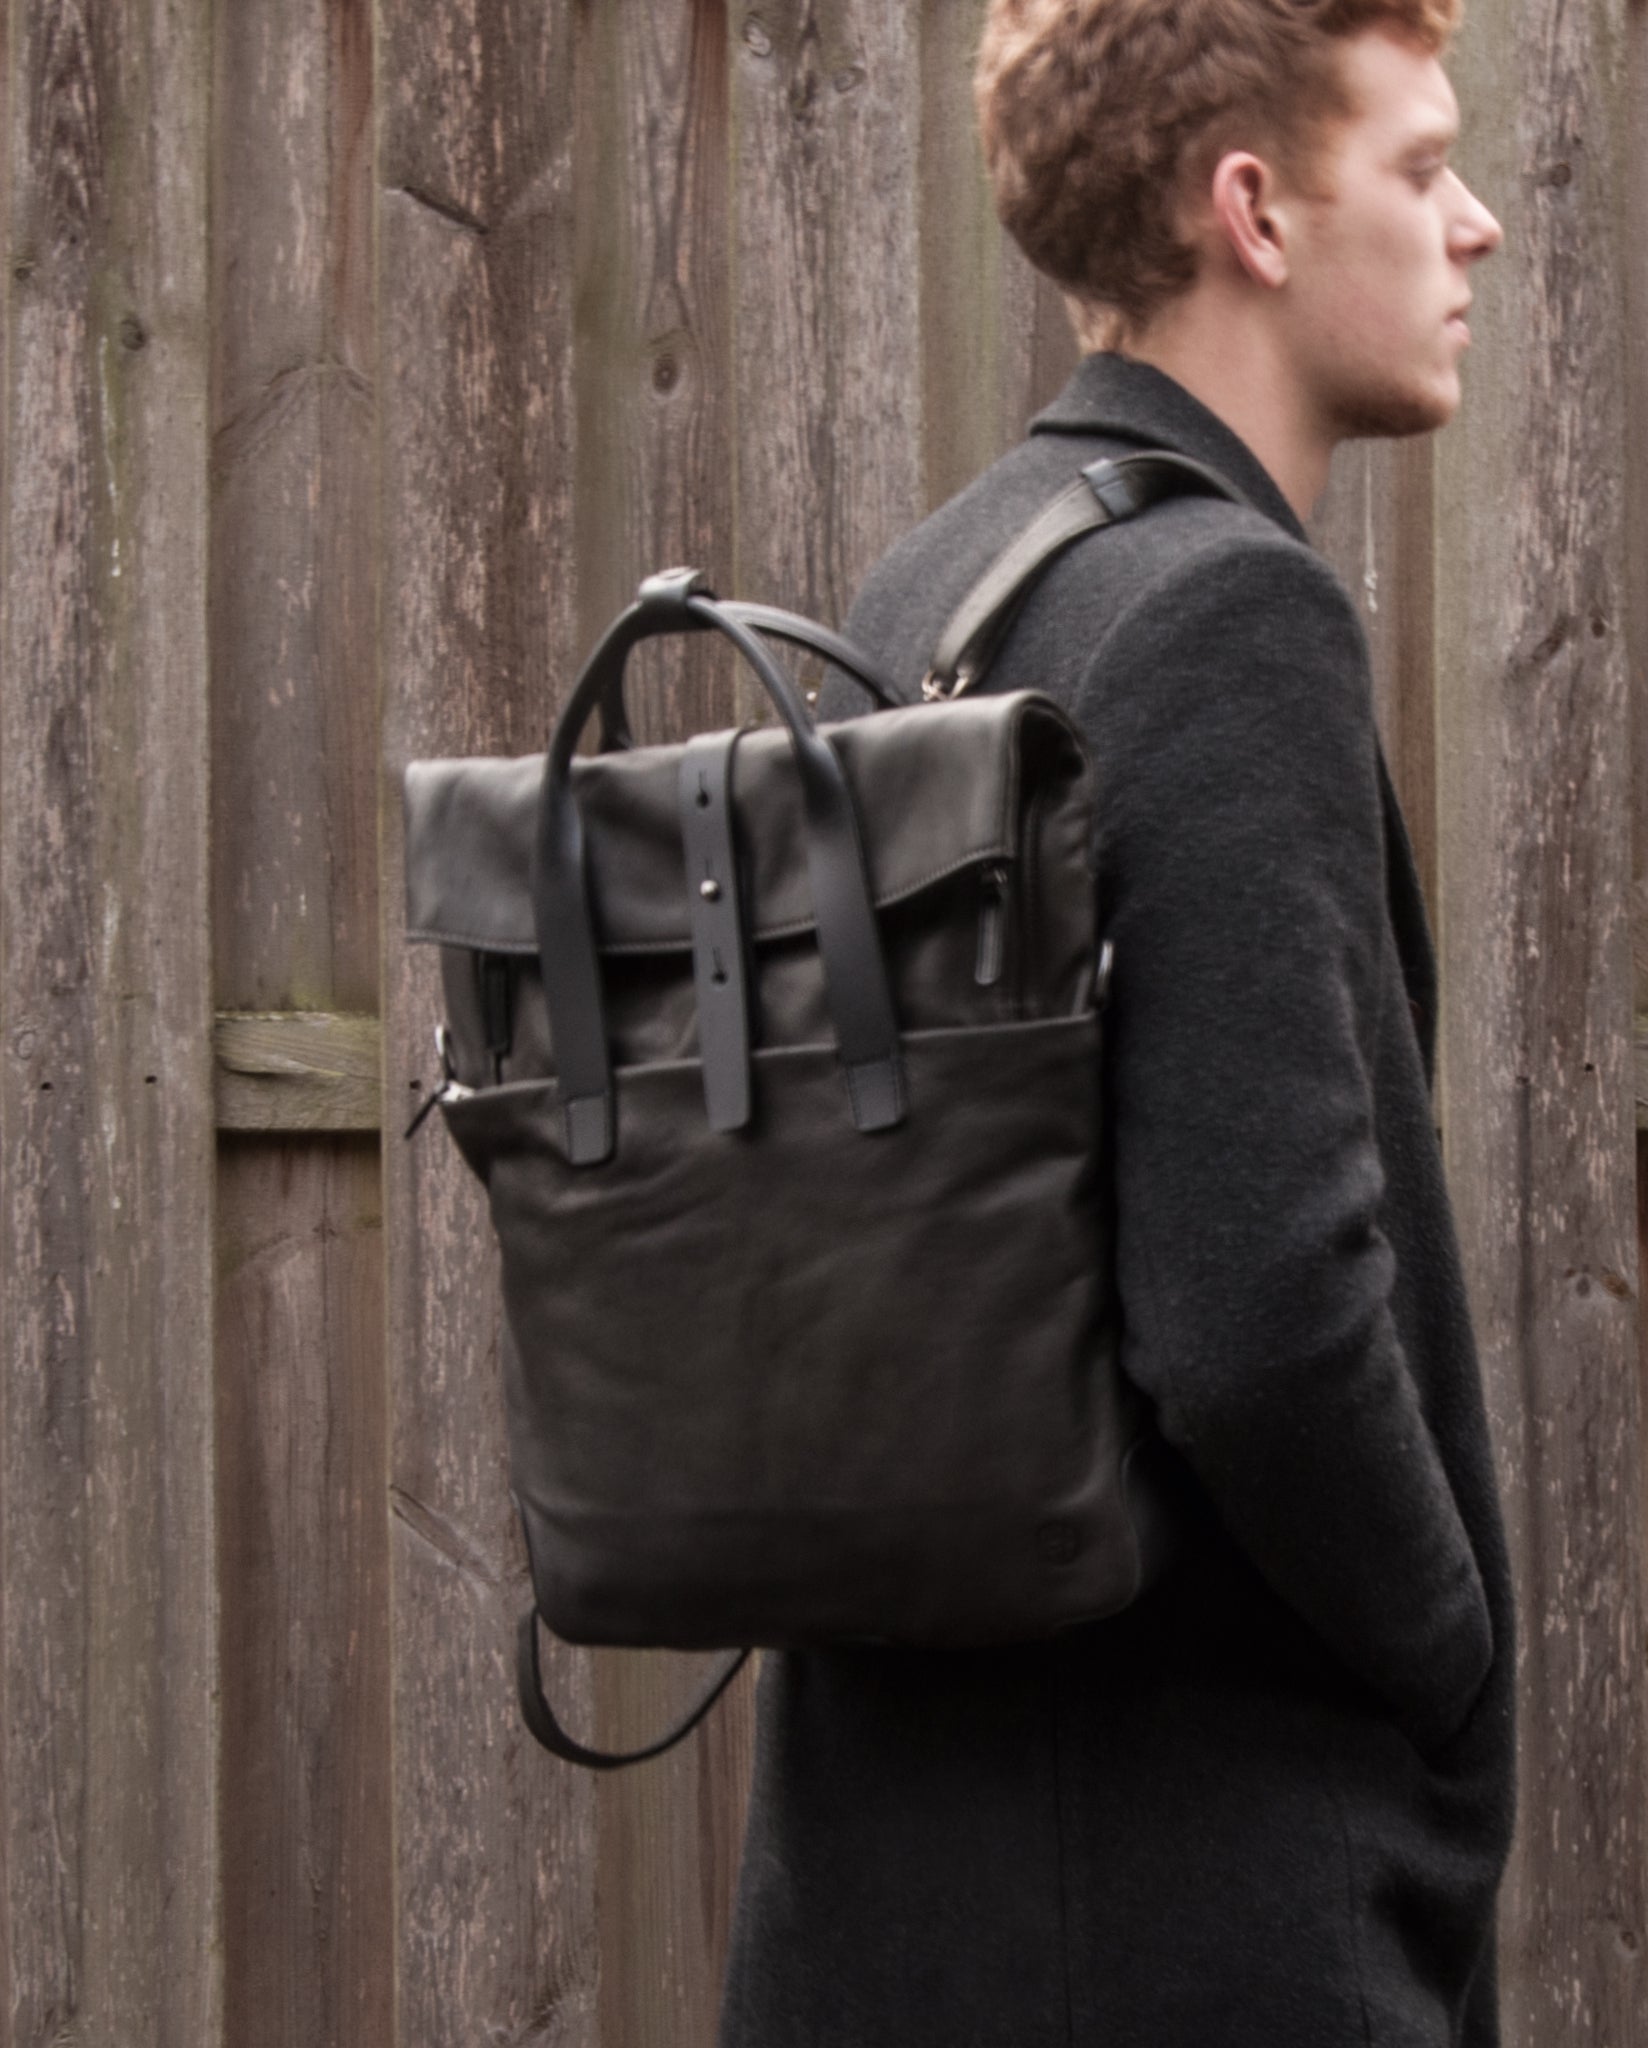 Mount Ivy Backpack/Messengerbag large - harolds-bags